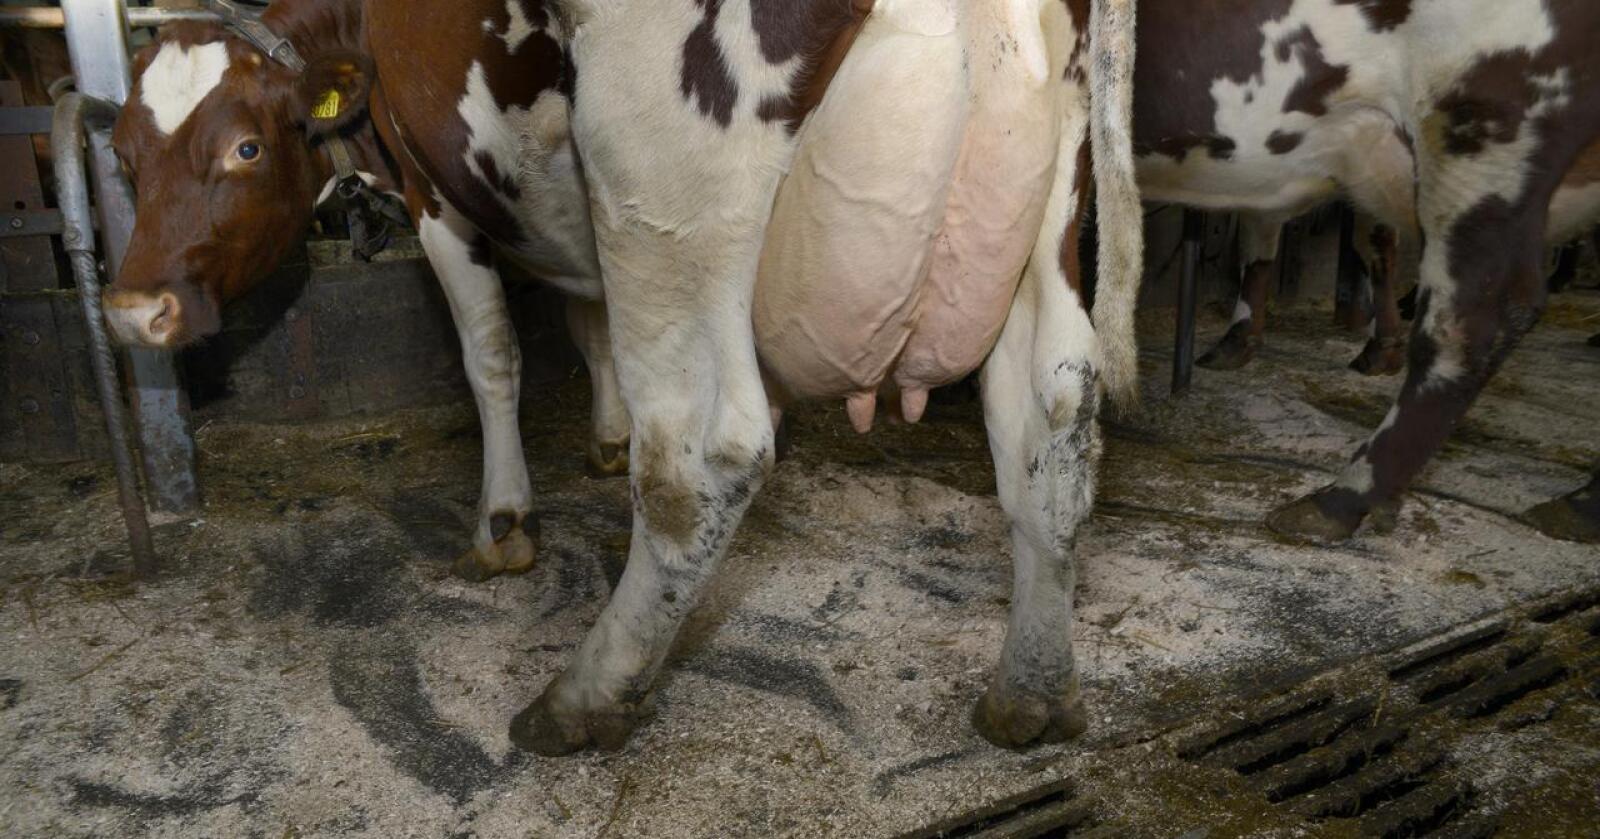 Barnehagebarn ble smittet av campyrobacter etter å ha drukket rå melk under et gårdsbesøk.  Illustrasjonsfoto: Mariann Tvete